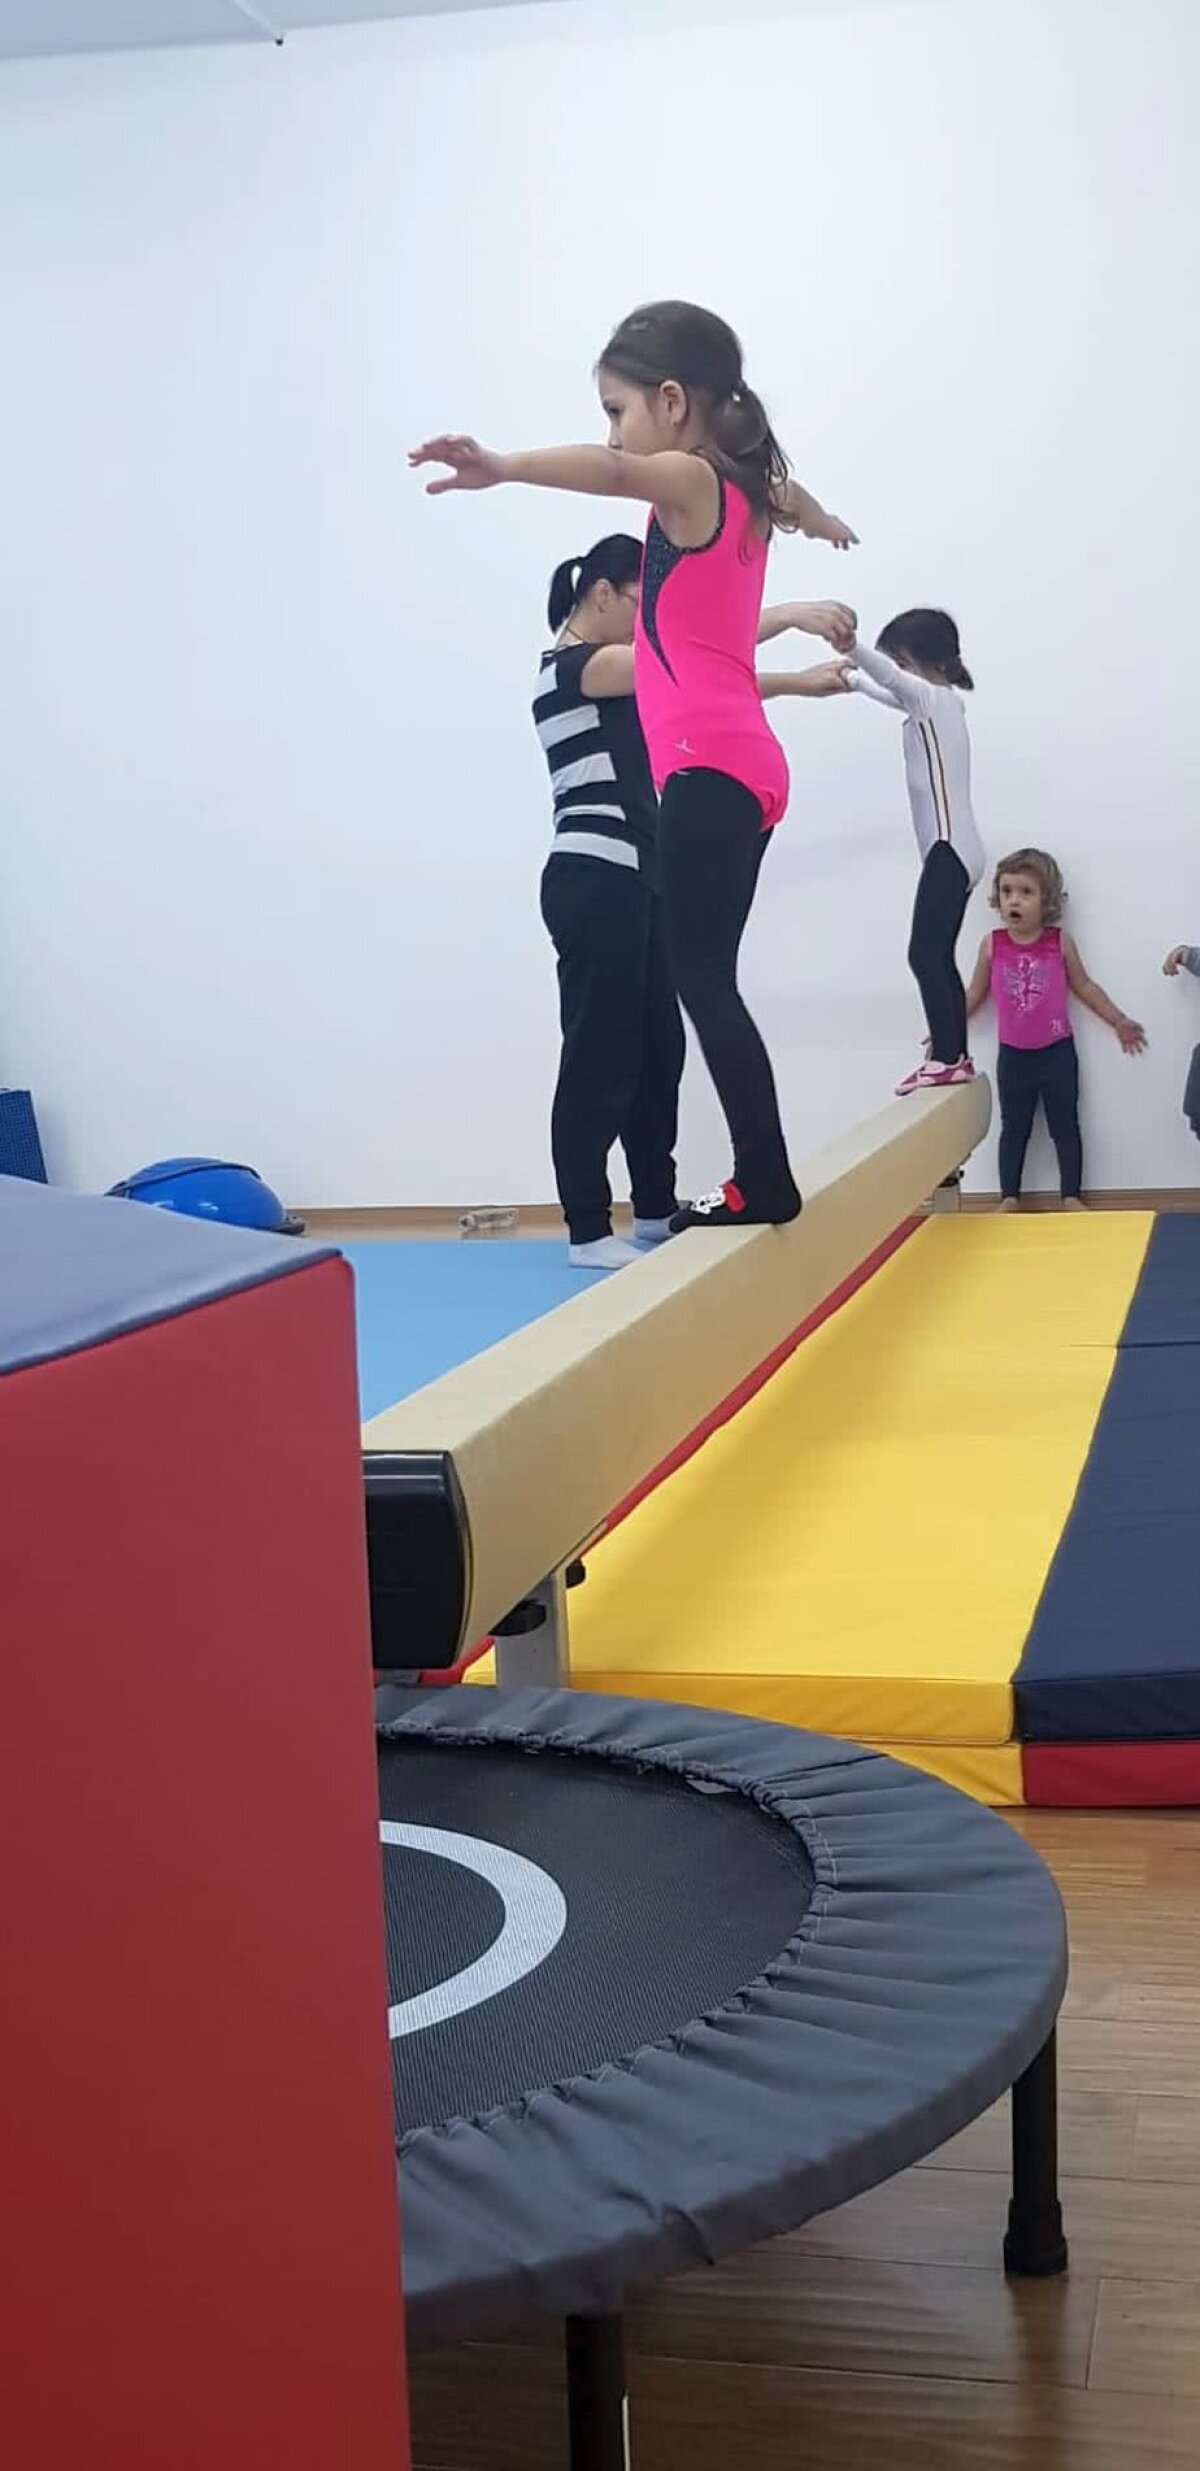 FOTO Baby gym, noul trend în gimnastică pentru cei mai mici! "Își dezvoltă forța, își pun mintea la contribuție și uită de tablete"